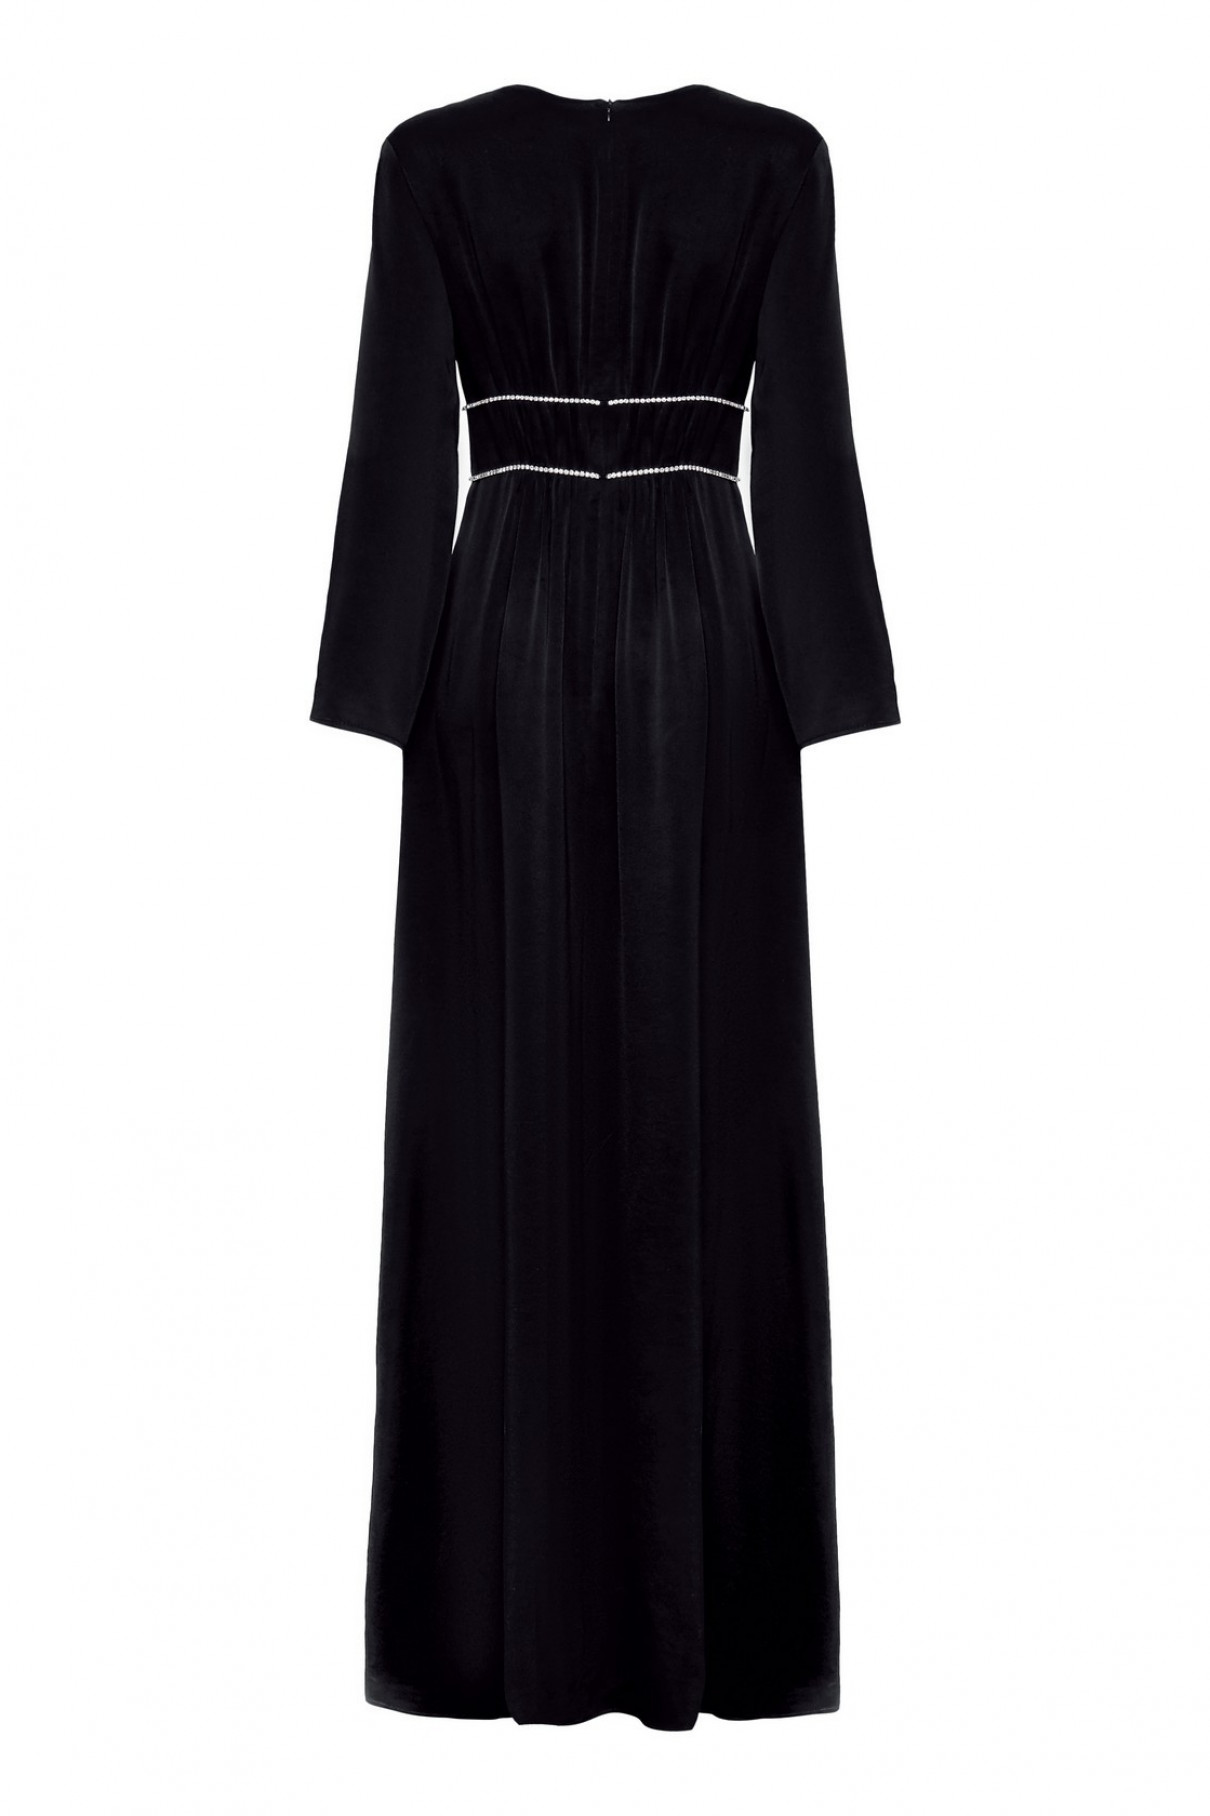 Платье чёрное с отделкой стразами Swarovski , арт. FR20-ББ-1-чр-4 купить в интернет-магазине